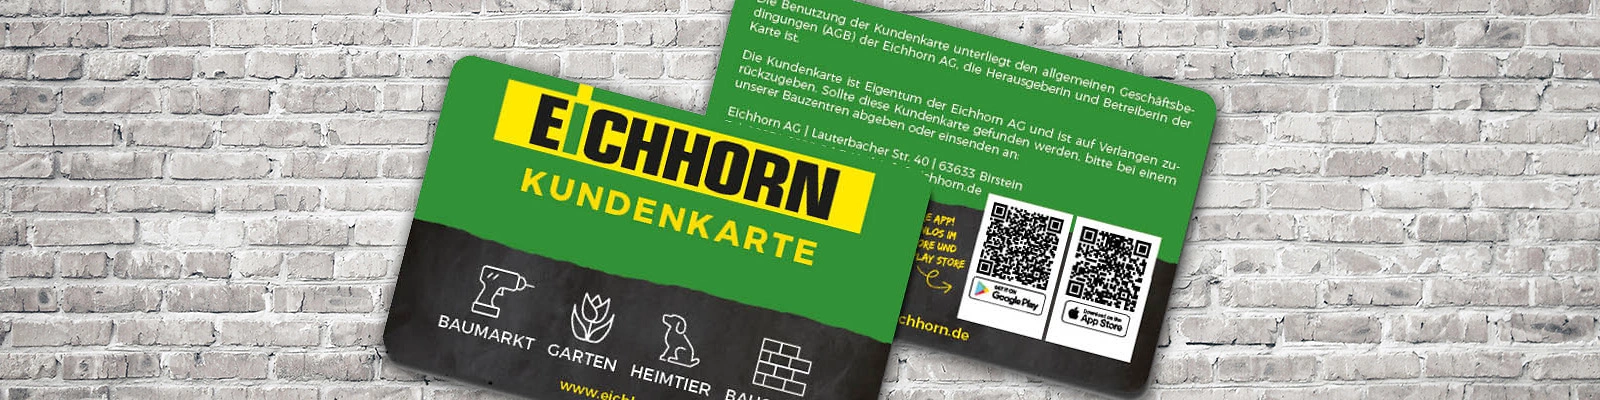 Eichhorn Startseite 1600x400 WideScreen Kundenkarte